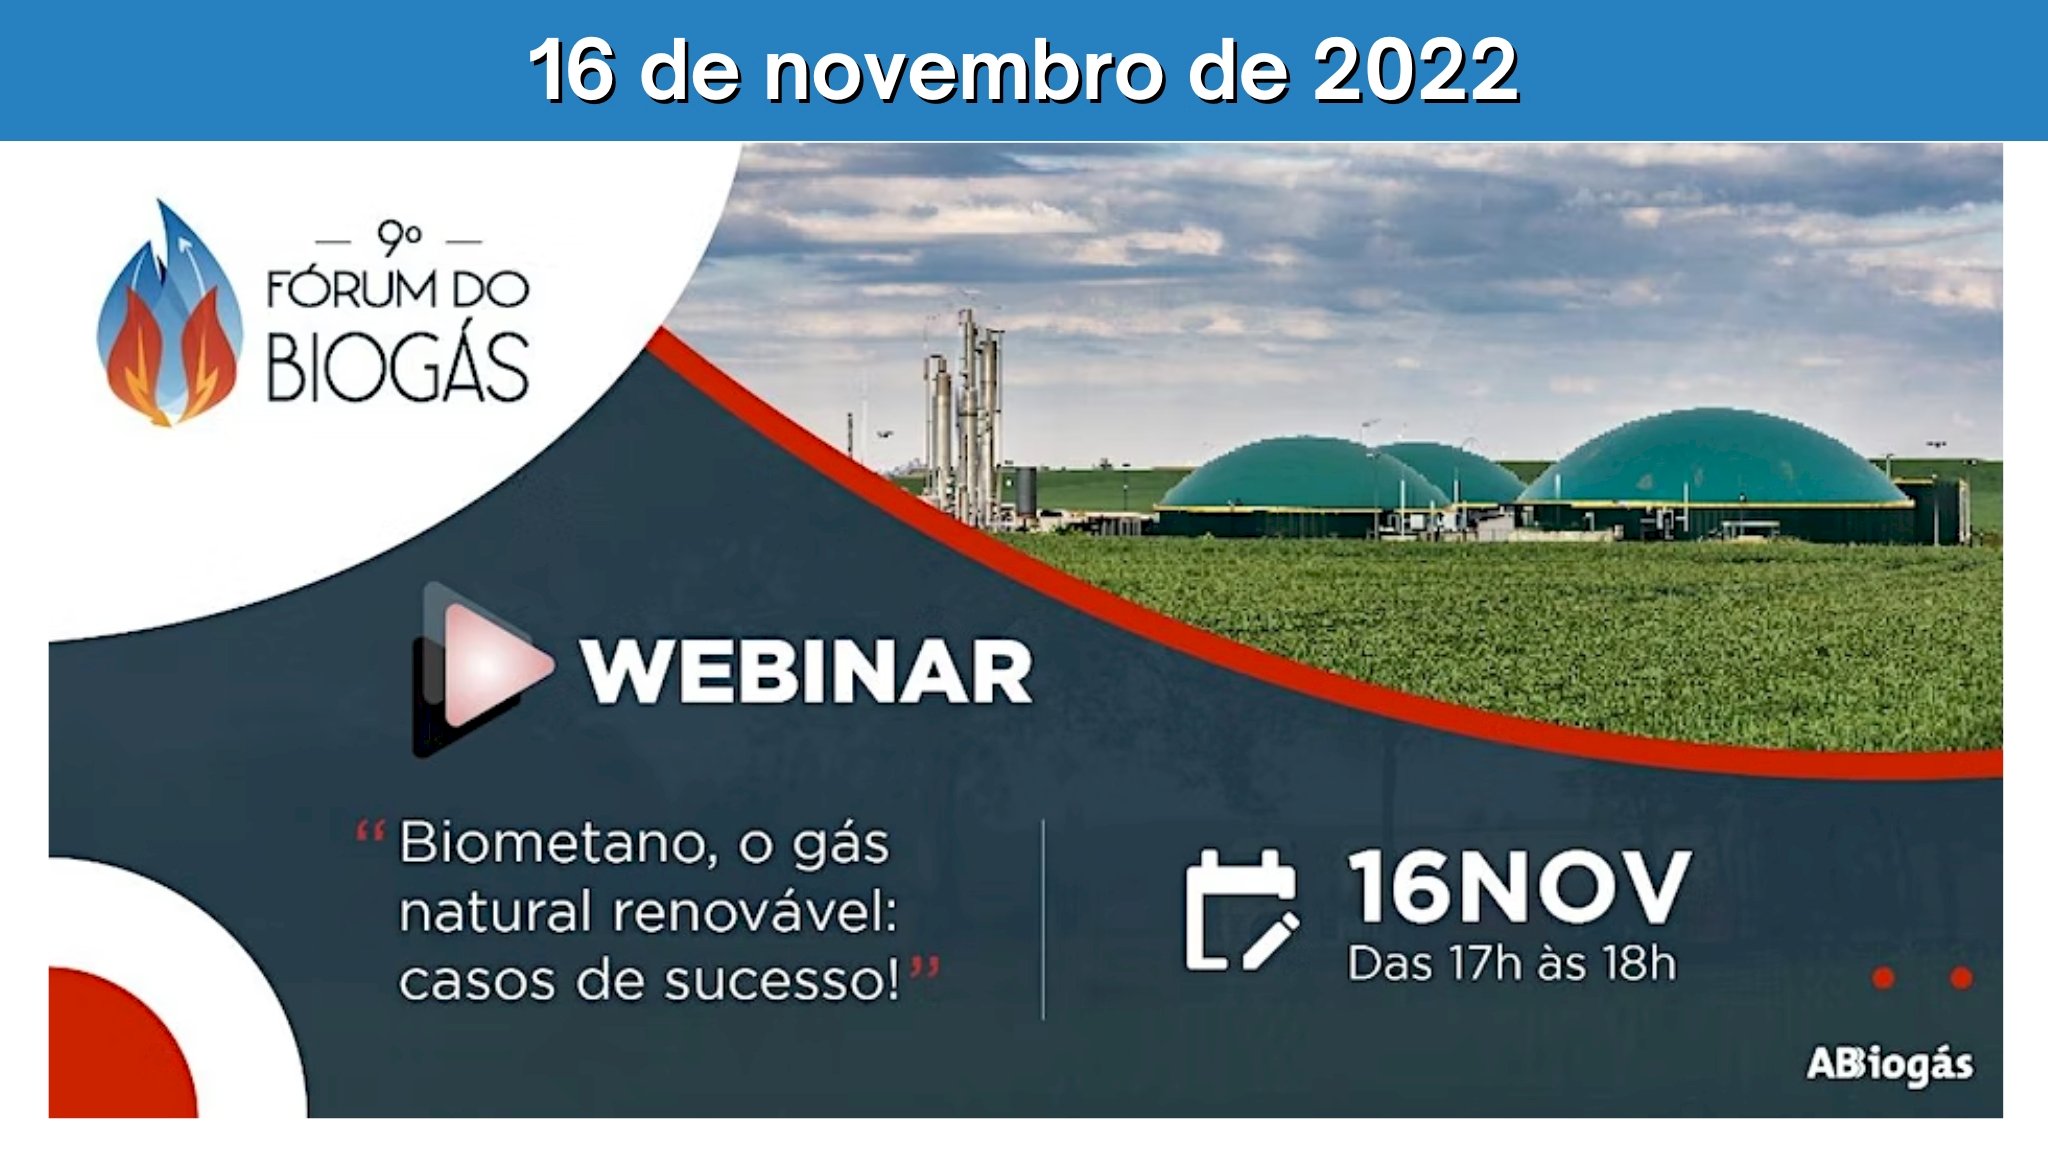 4º Webinar ABiogás - Biometano, o gás natural renovável: casos de sucesso!